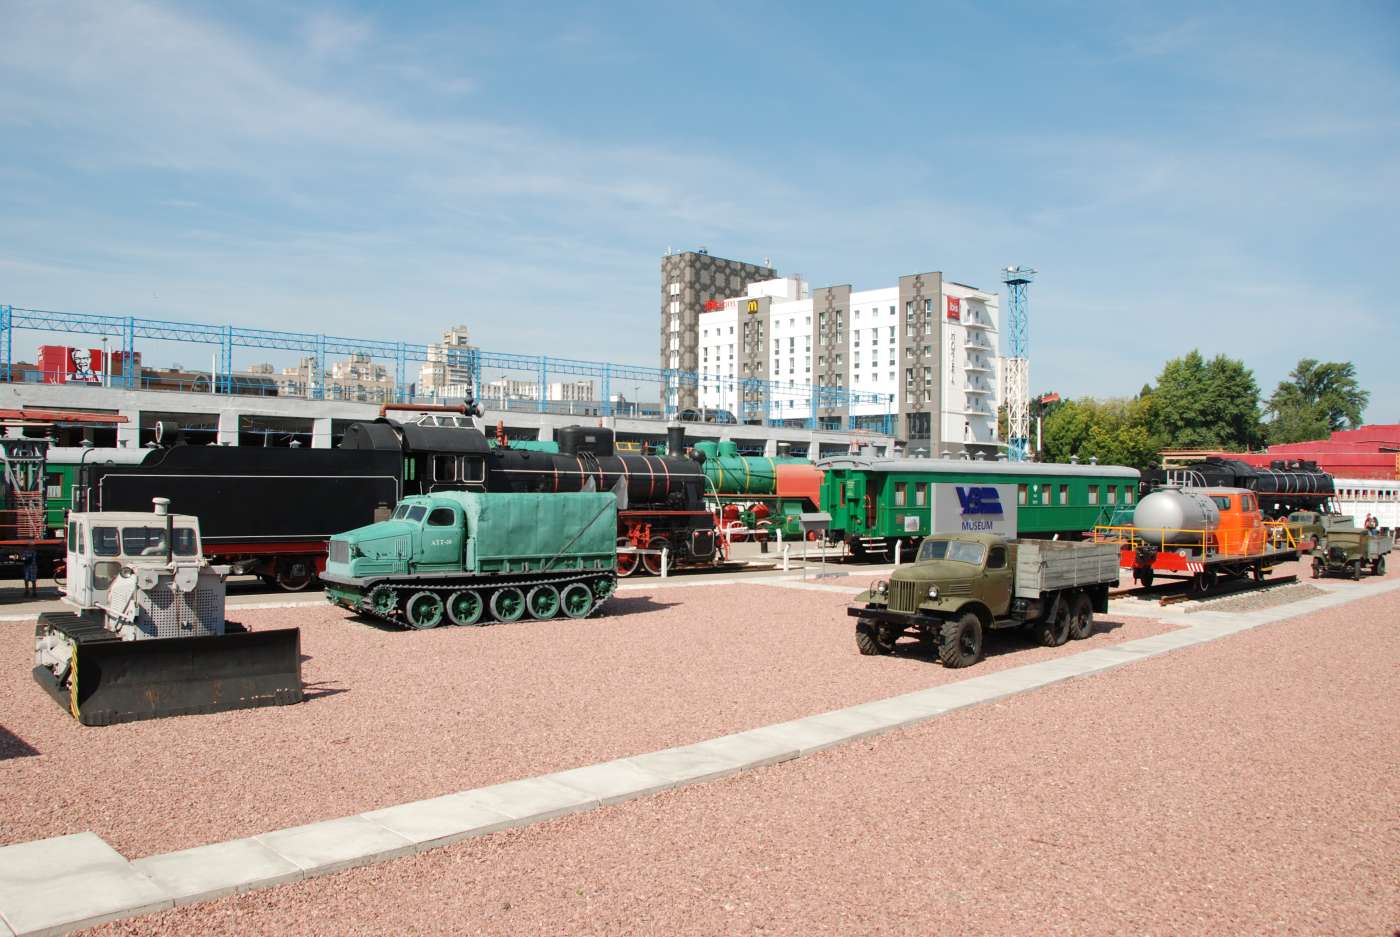 Railway Museum Kiev (Музей залізничного транспорту)